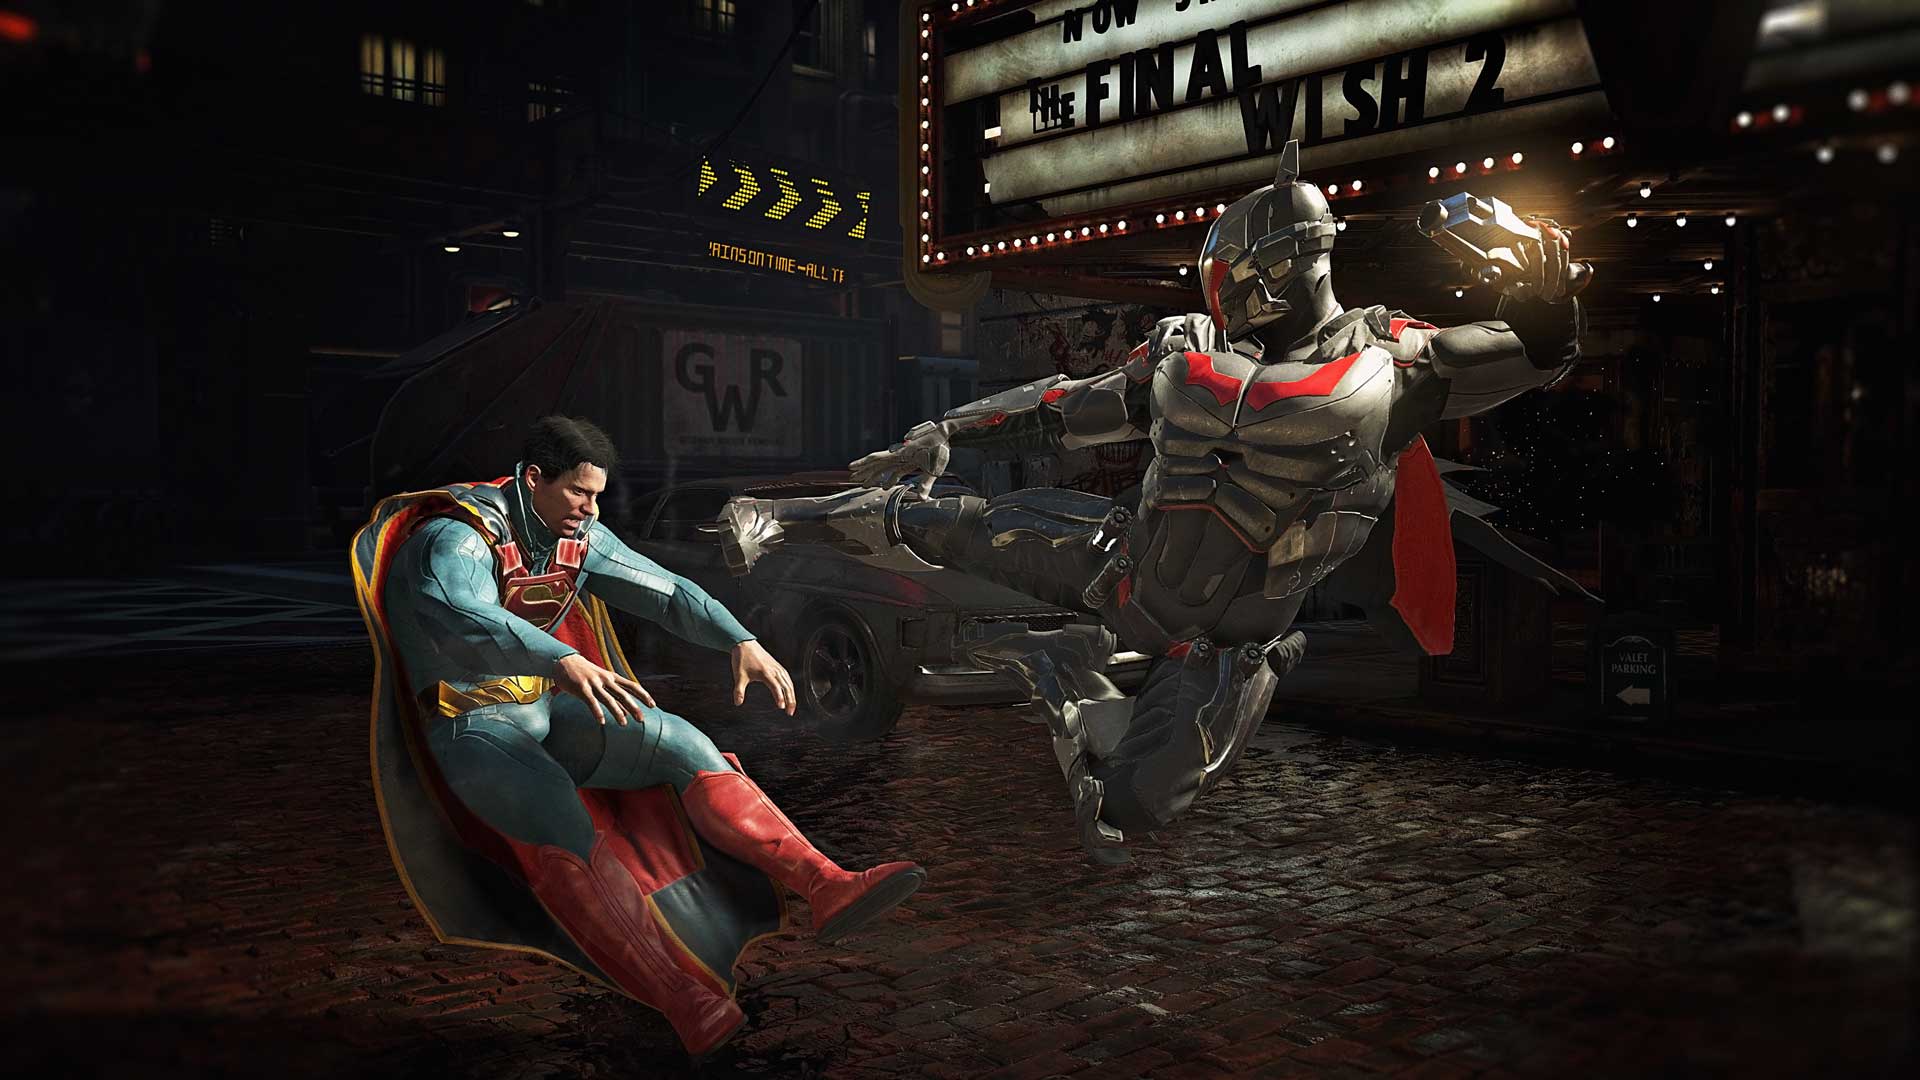 Скриншот-2 из игры Injustice 2 для PS4